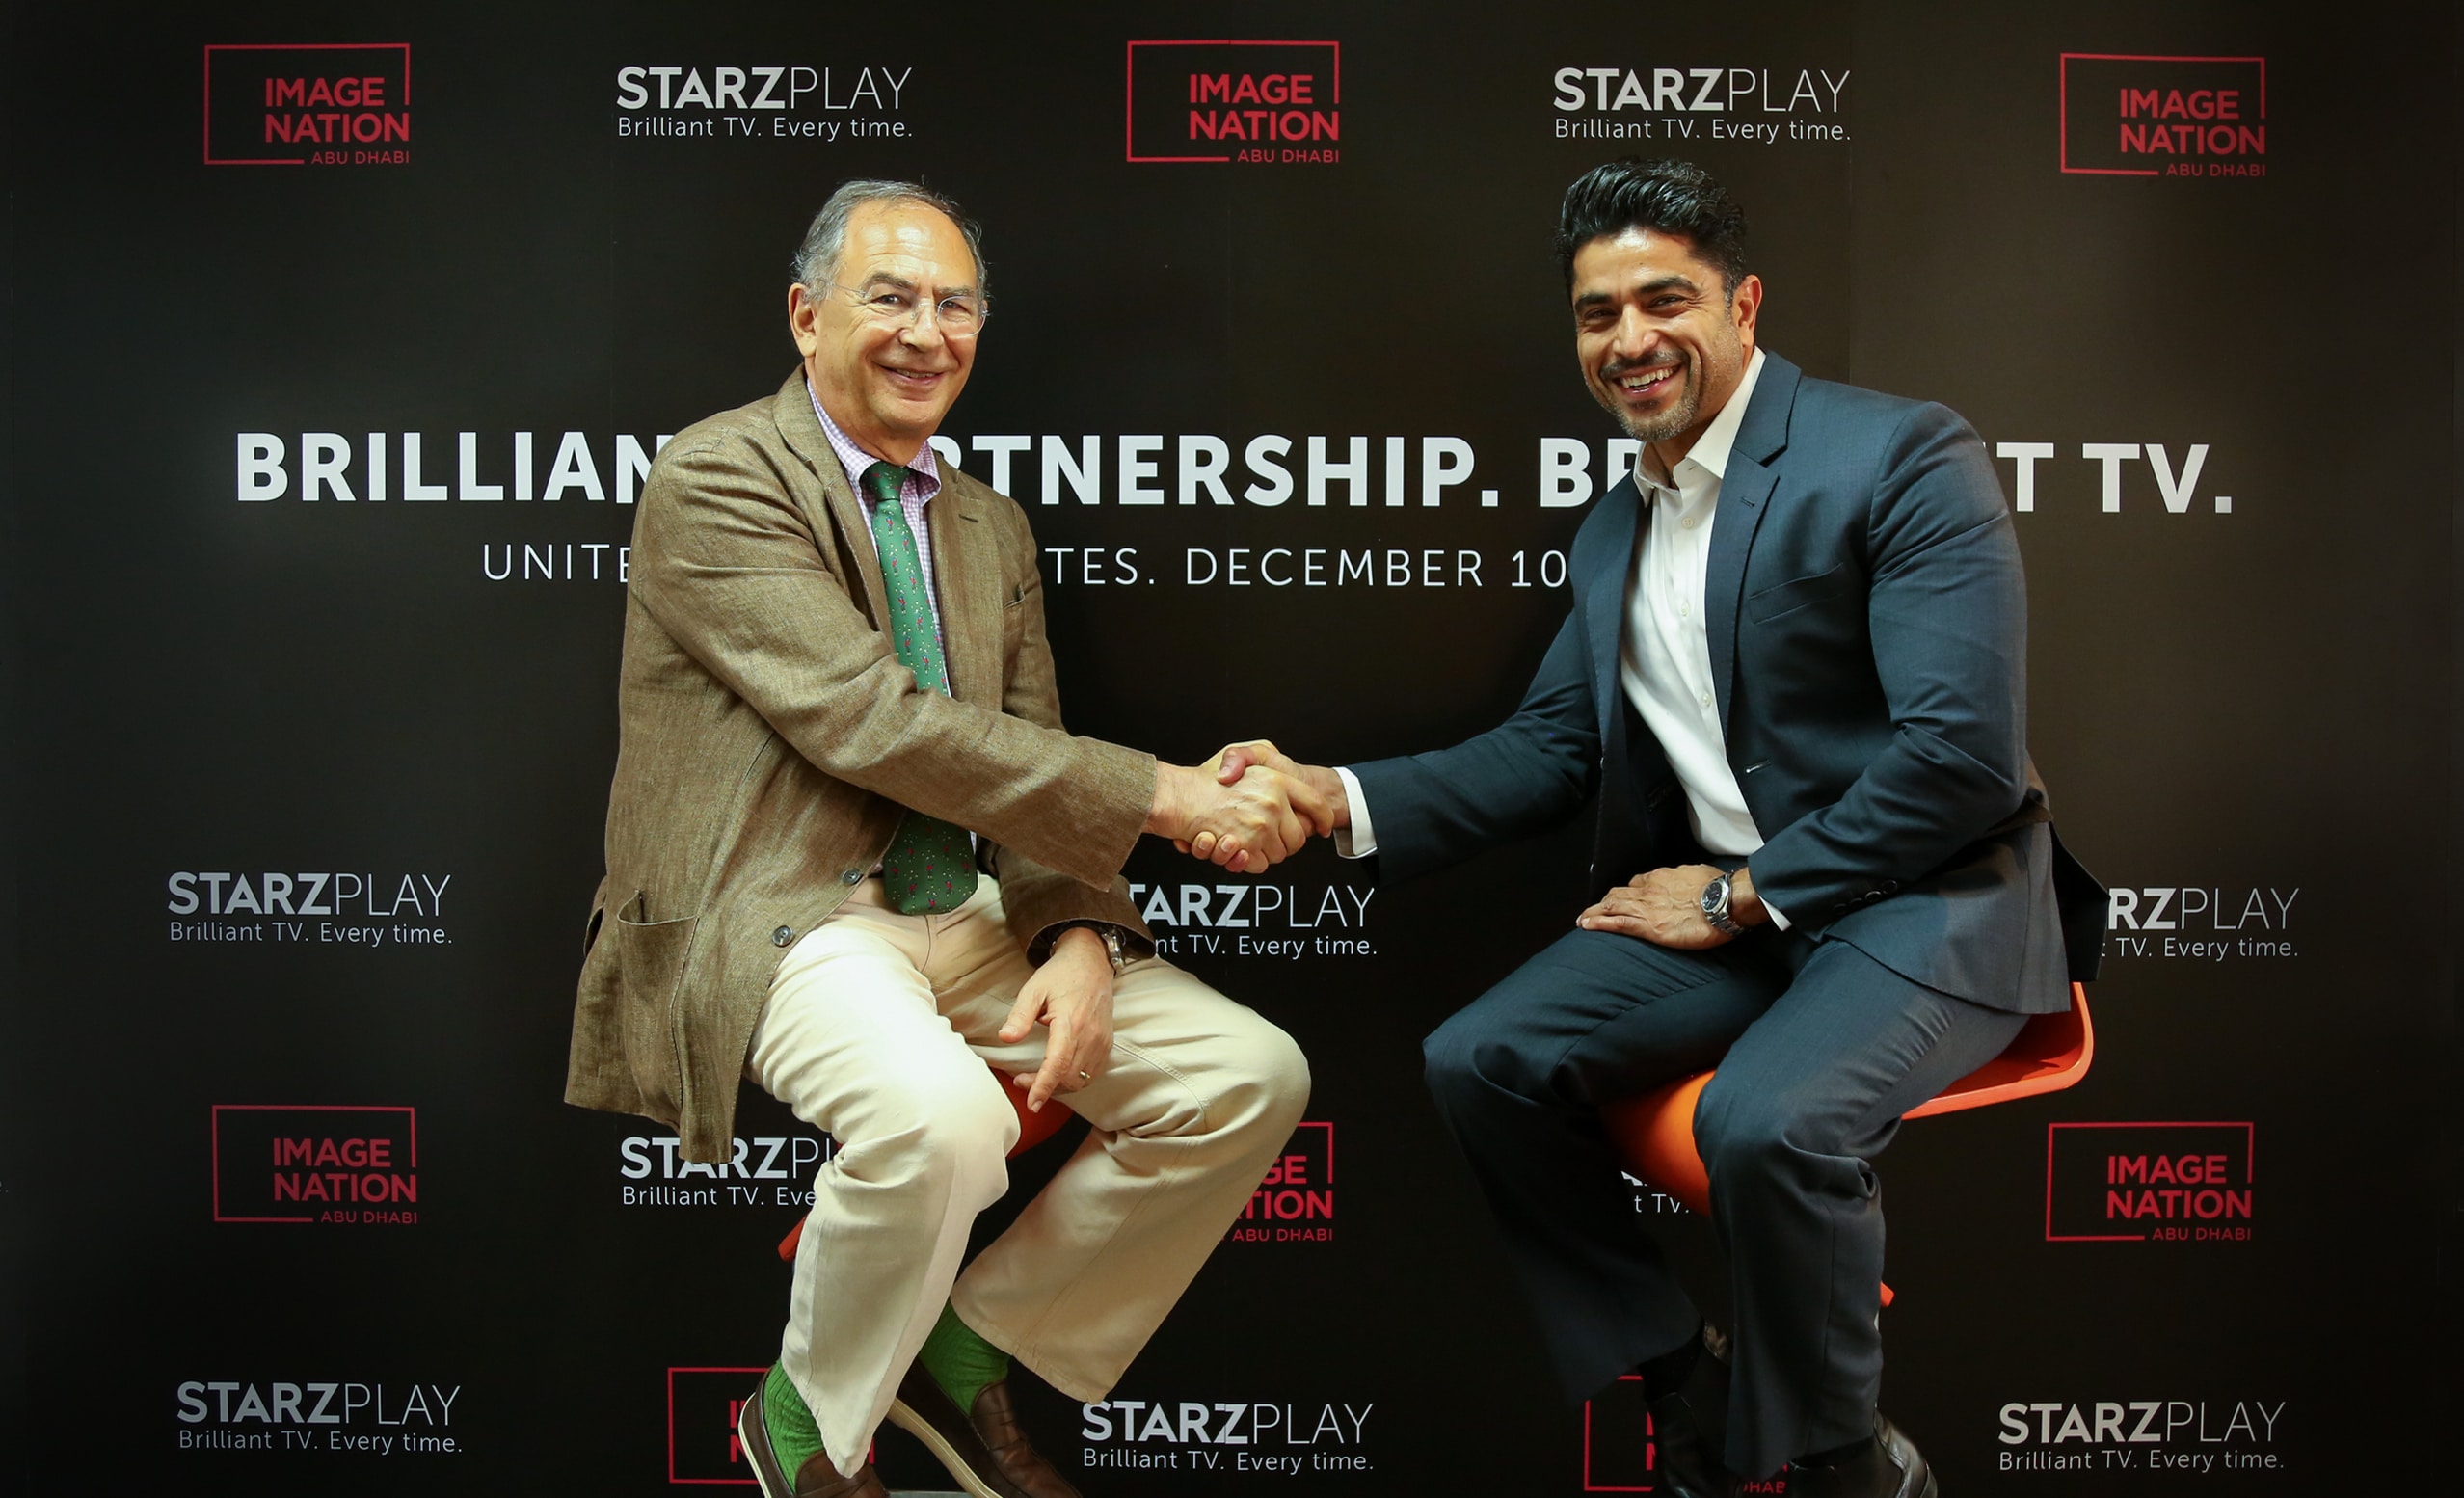 شراكة بين STARZPLAY وإيمج نيشن أبوظبي من أجل إنتاج مسلسلات عربية أصلية